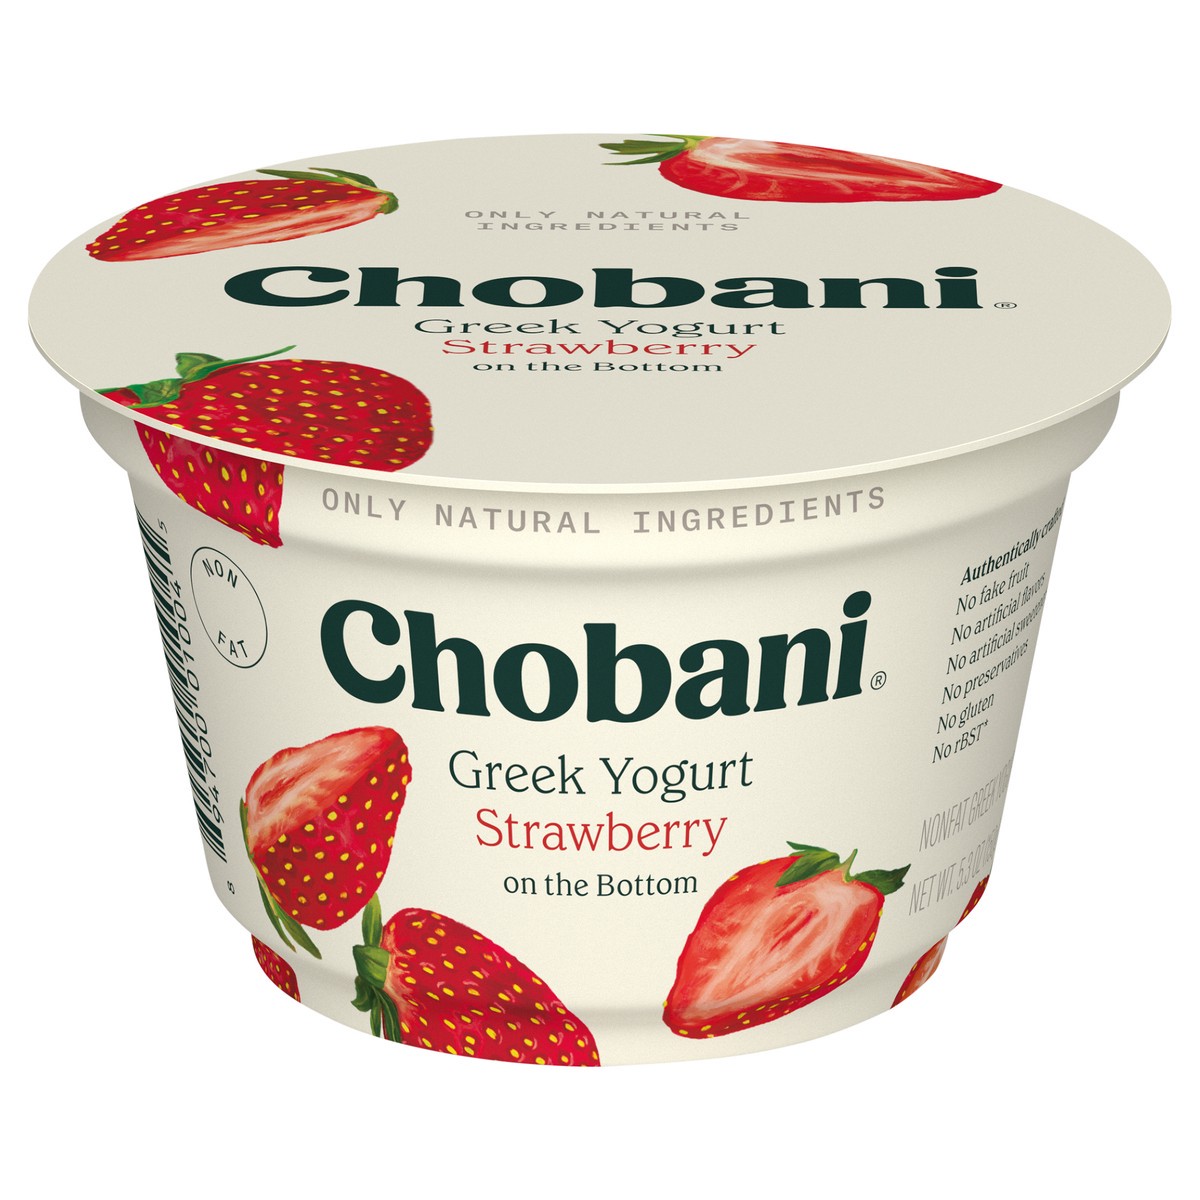 slide 1 of 83, Chobani Strawberry on the Bottom Nonfat Greek Yogurt - 5.3oz, 5.3 oz